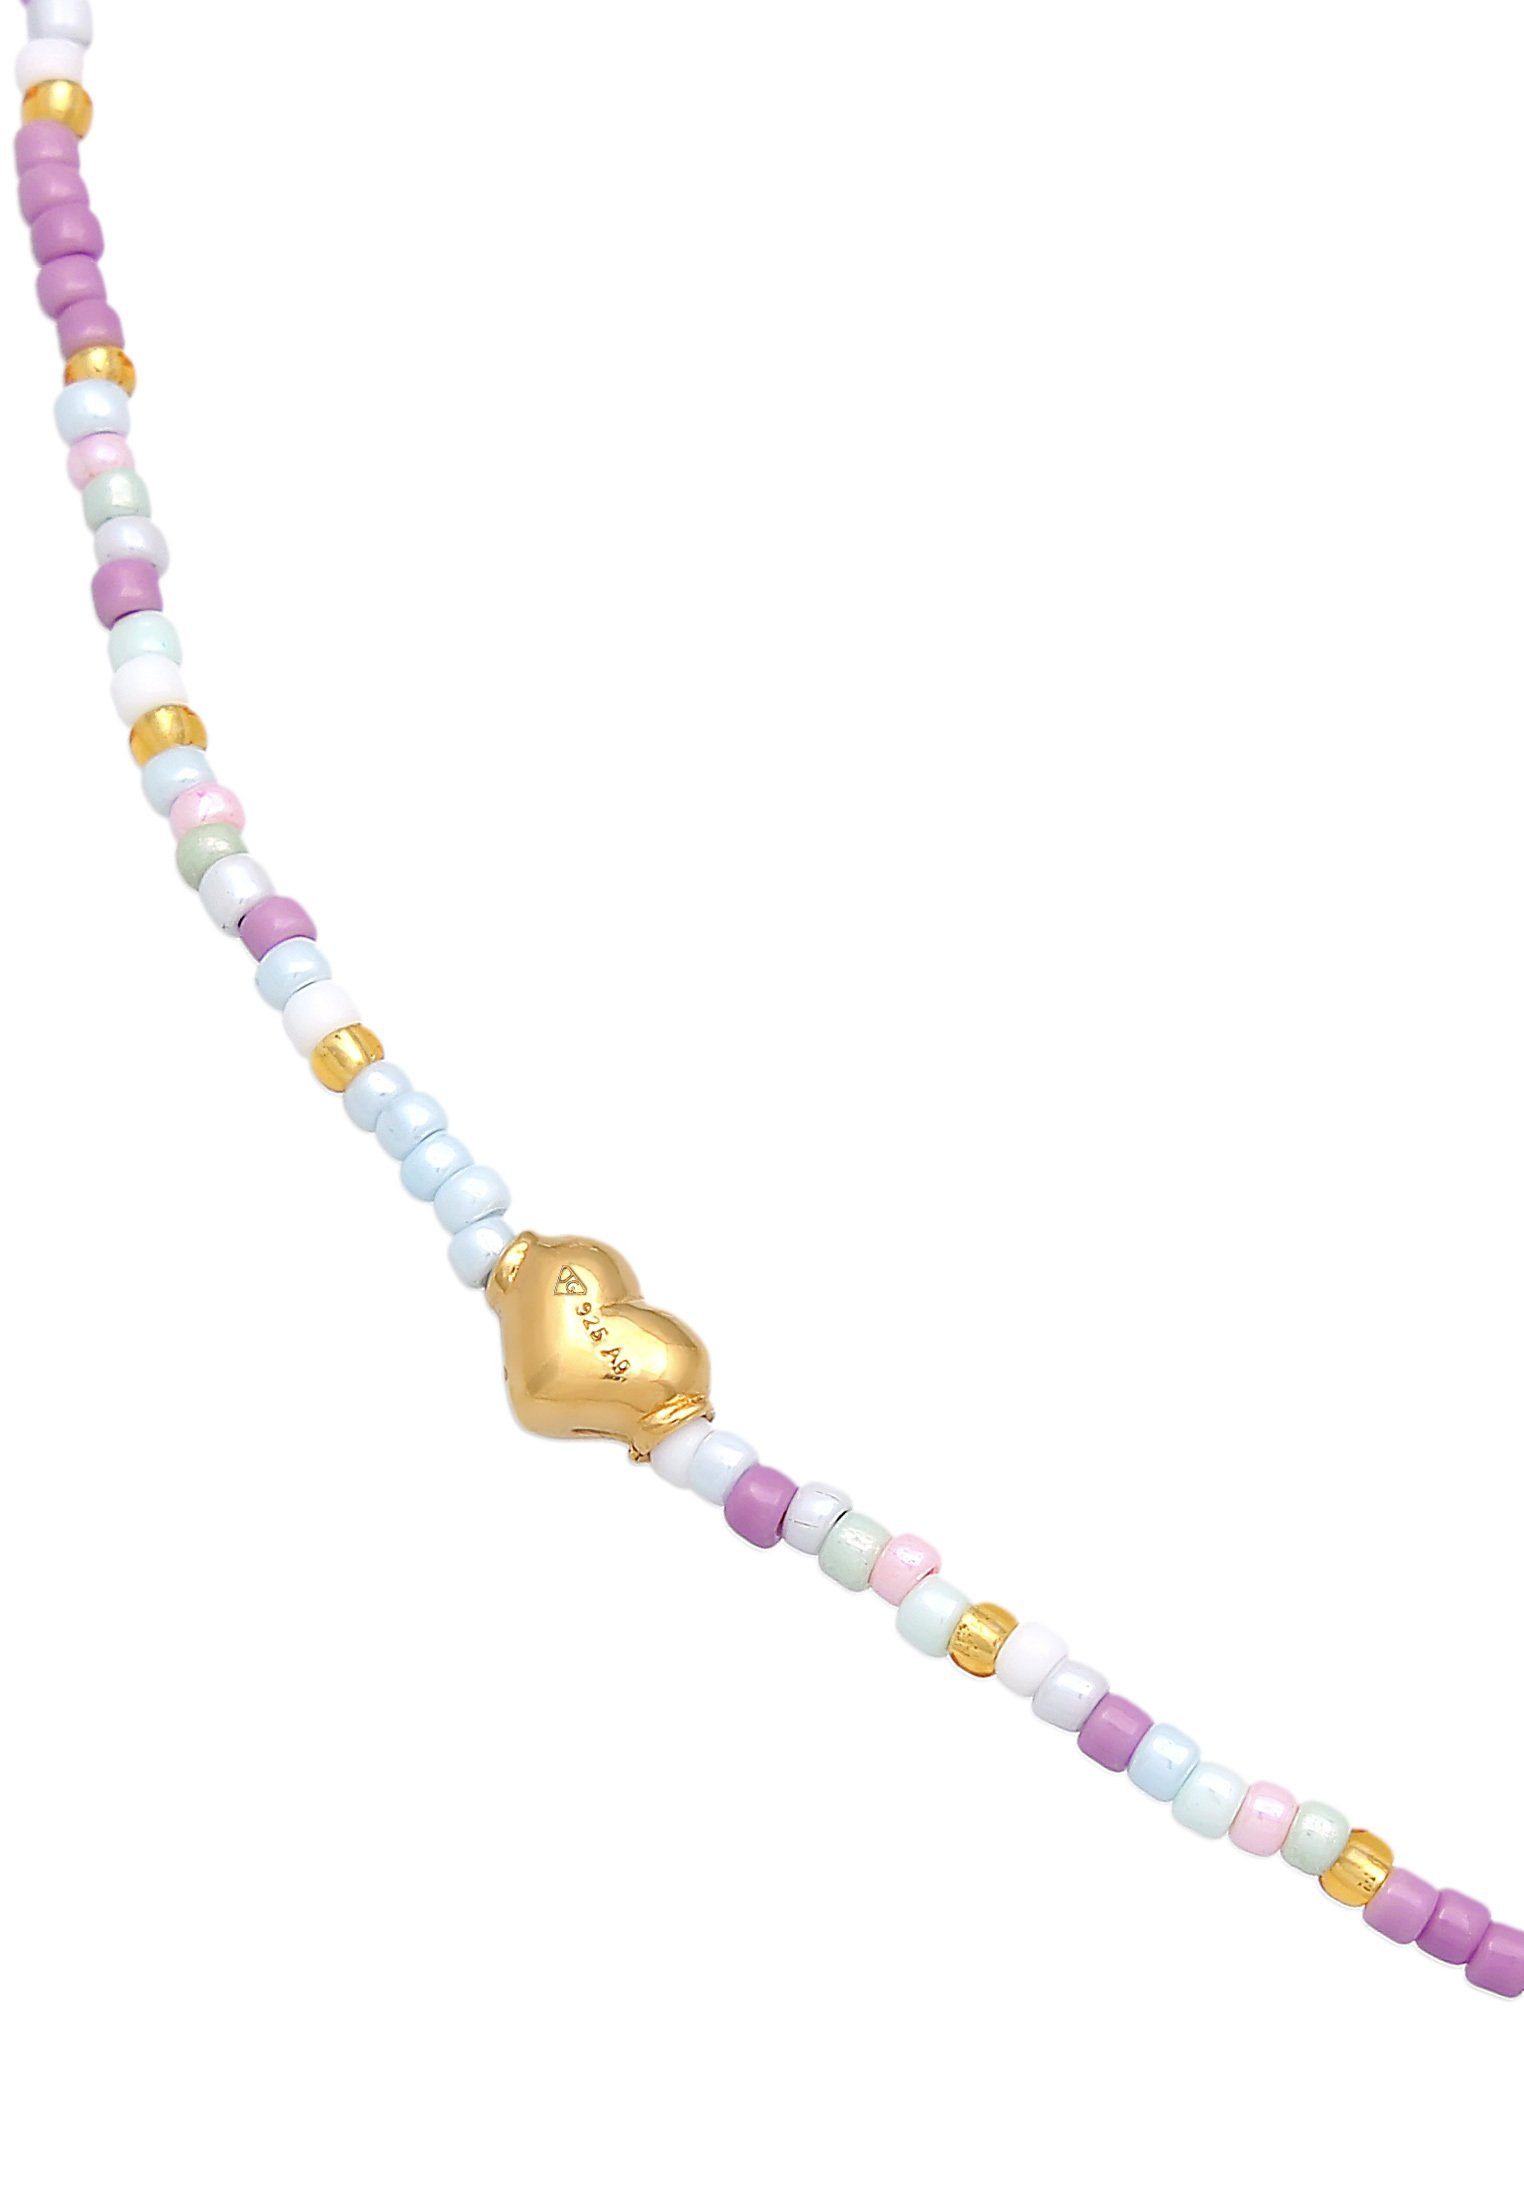 Fußkette Glas Herz Silber Beads Elli Sommer 925 vergoldet Style